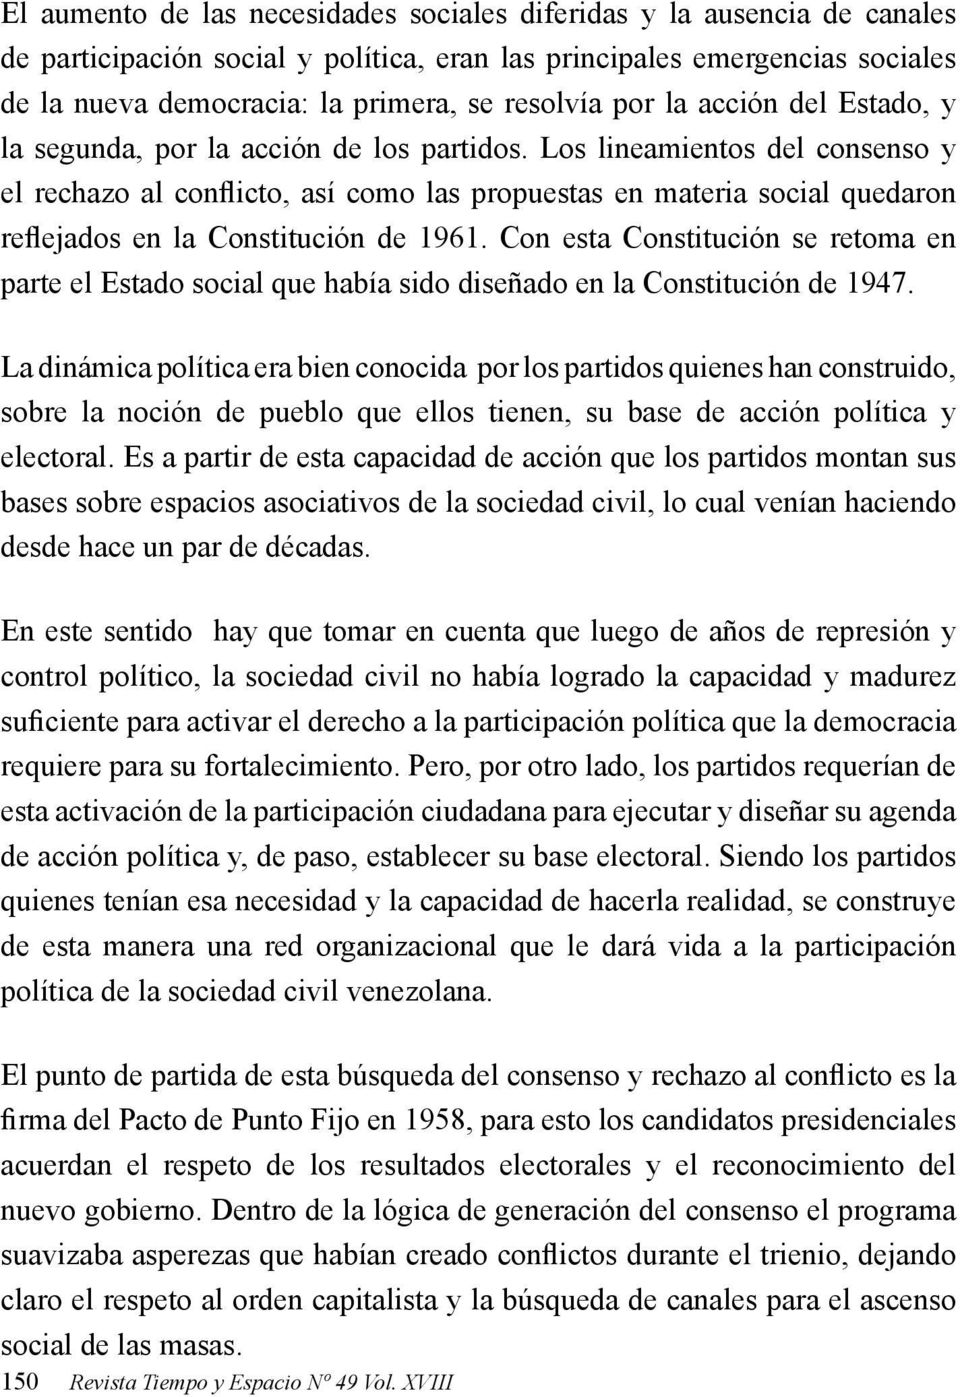 Los lineamientos del consenso y el rechazo al conflicto, así como las propuestas en materia social quedaron reflejados en la Constitución de 1961.